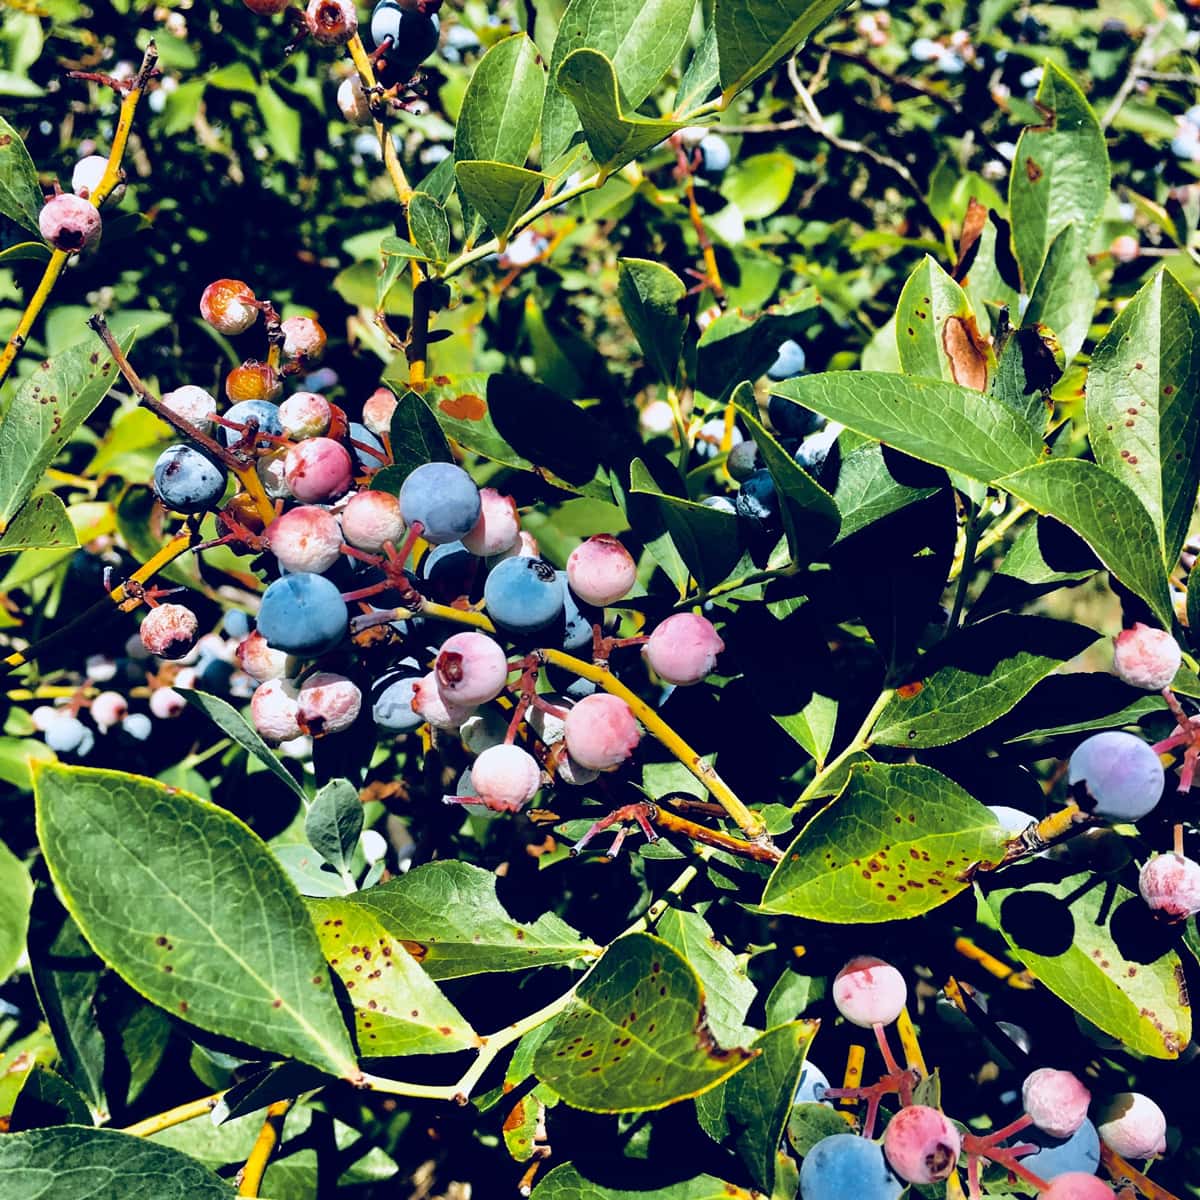 wild blueberries in a bush